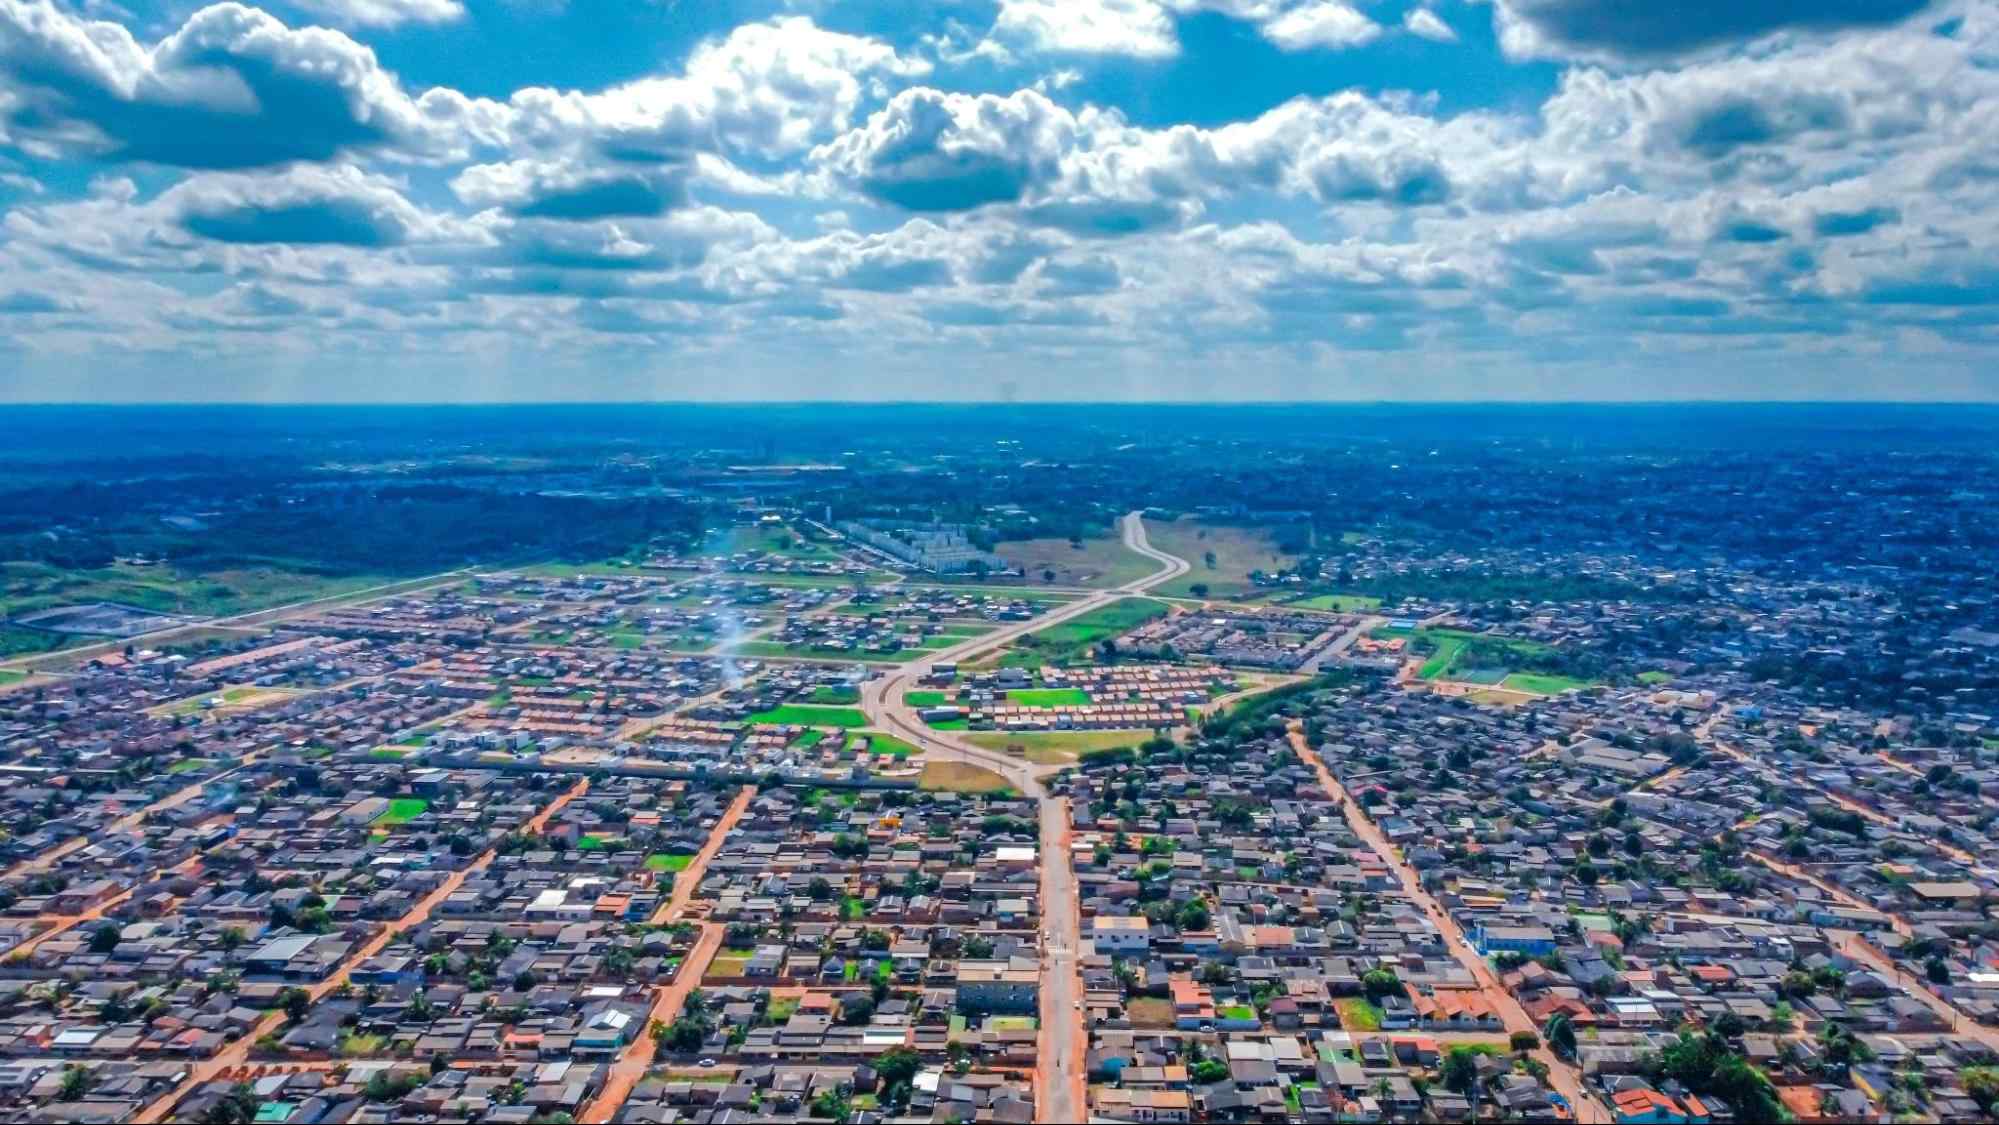 Vista aérea de Rio Branco. A paisagem urbana tem principalmente construções baixas, agrupadas em quarteirões bem divididos por longas avenidas